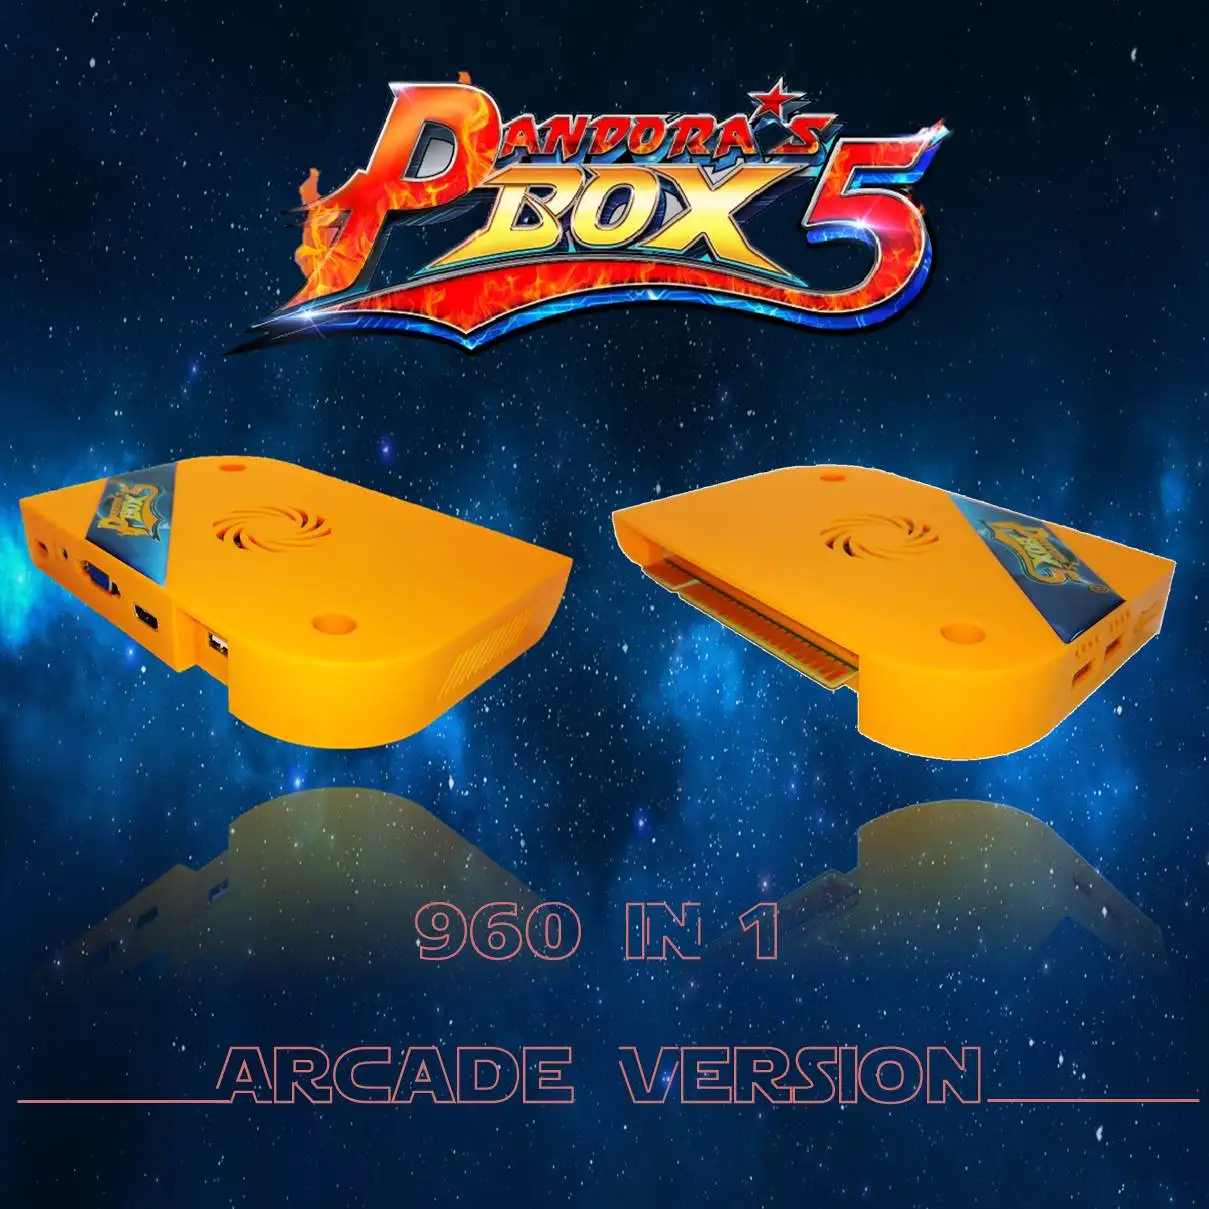 Arcade 960 in 1 Multigames Board Pandora's Box 5